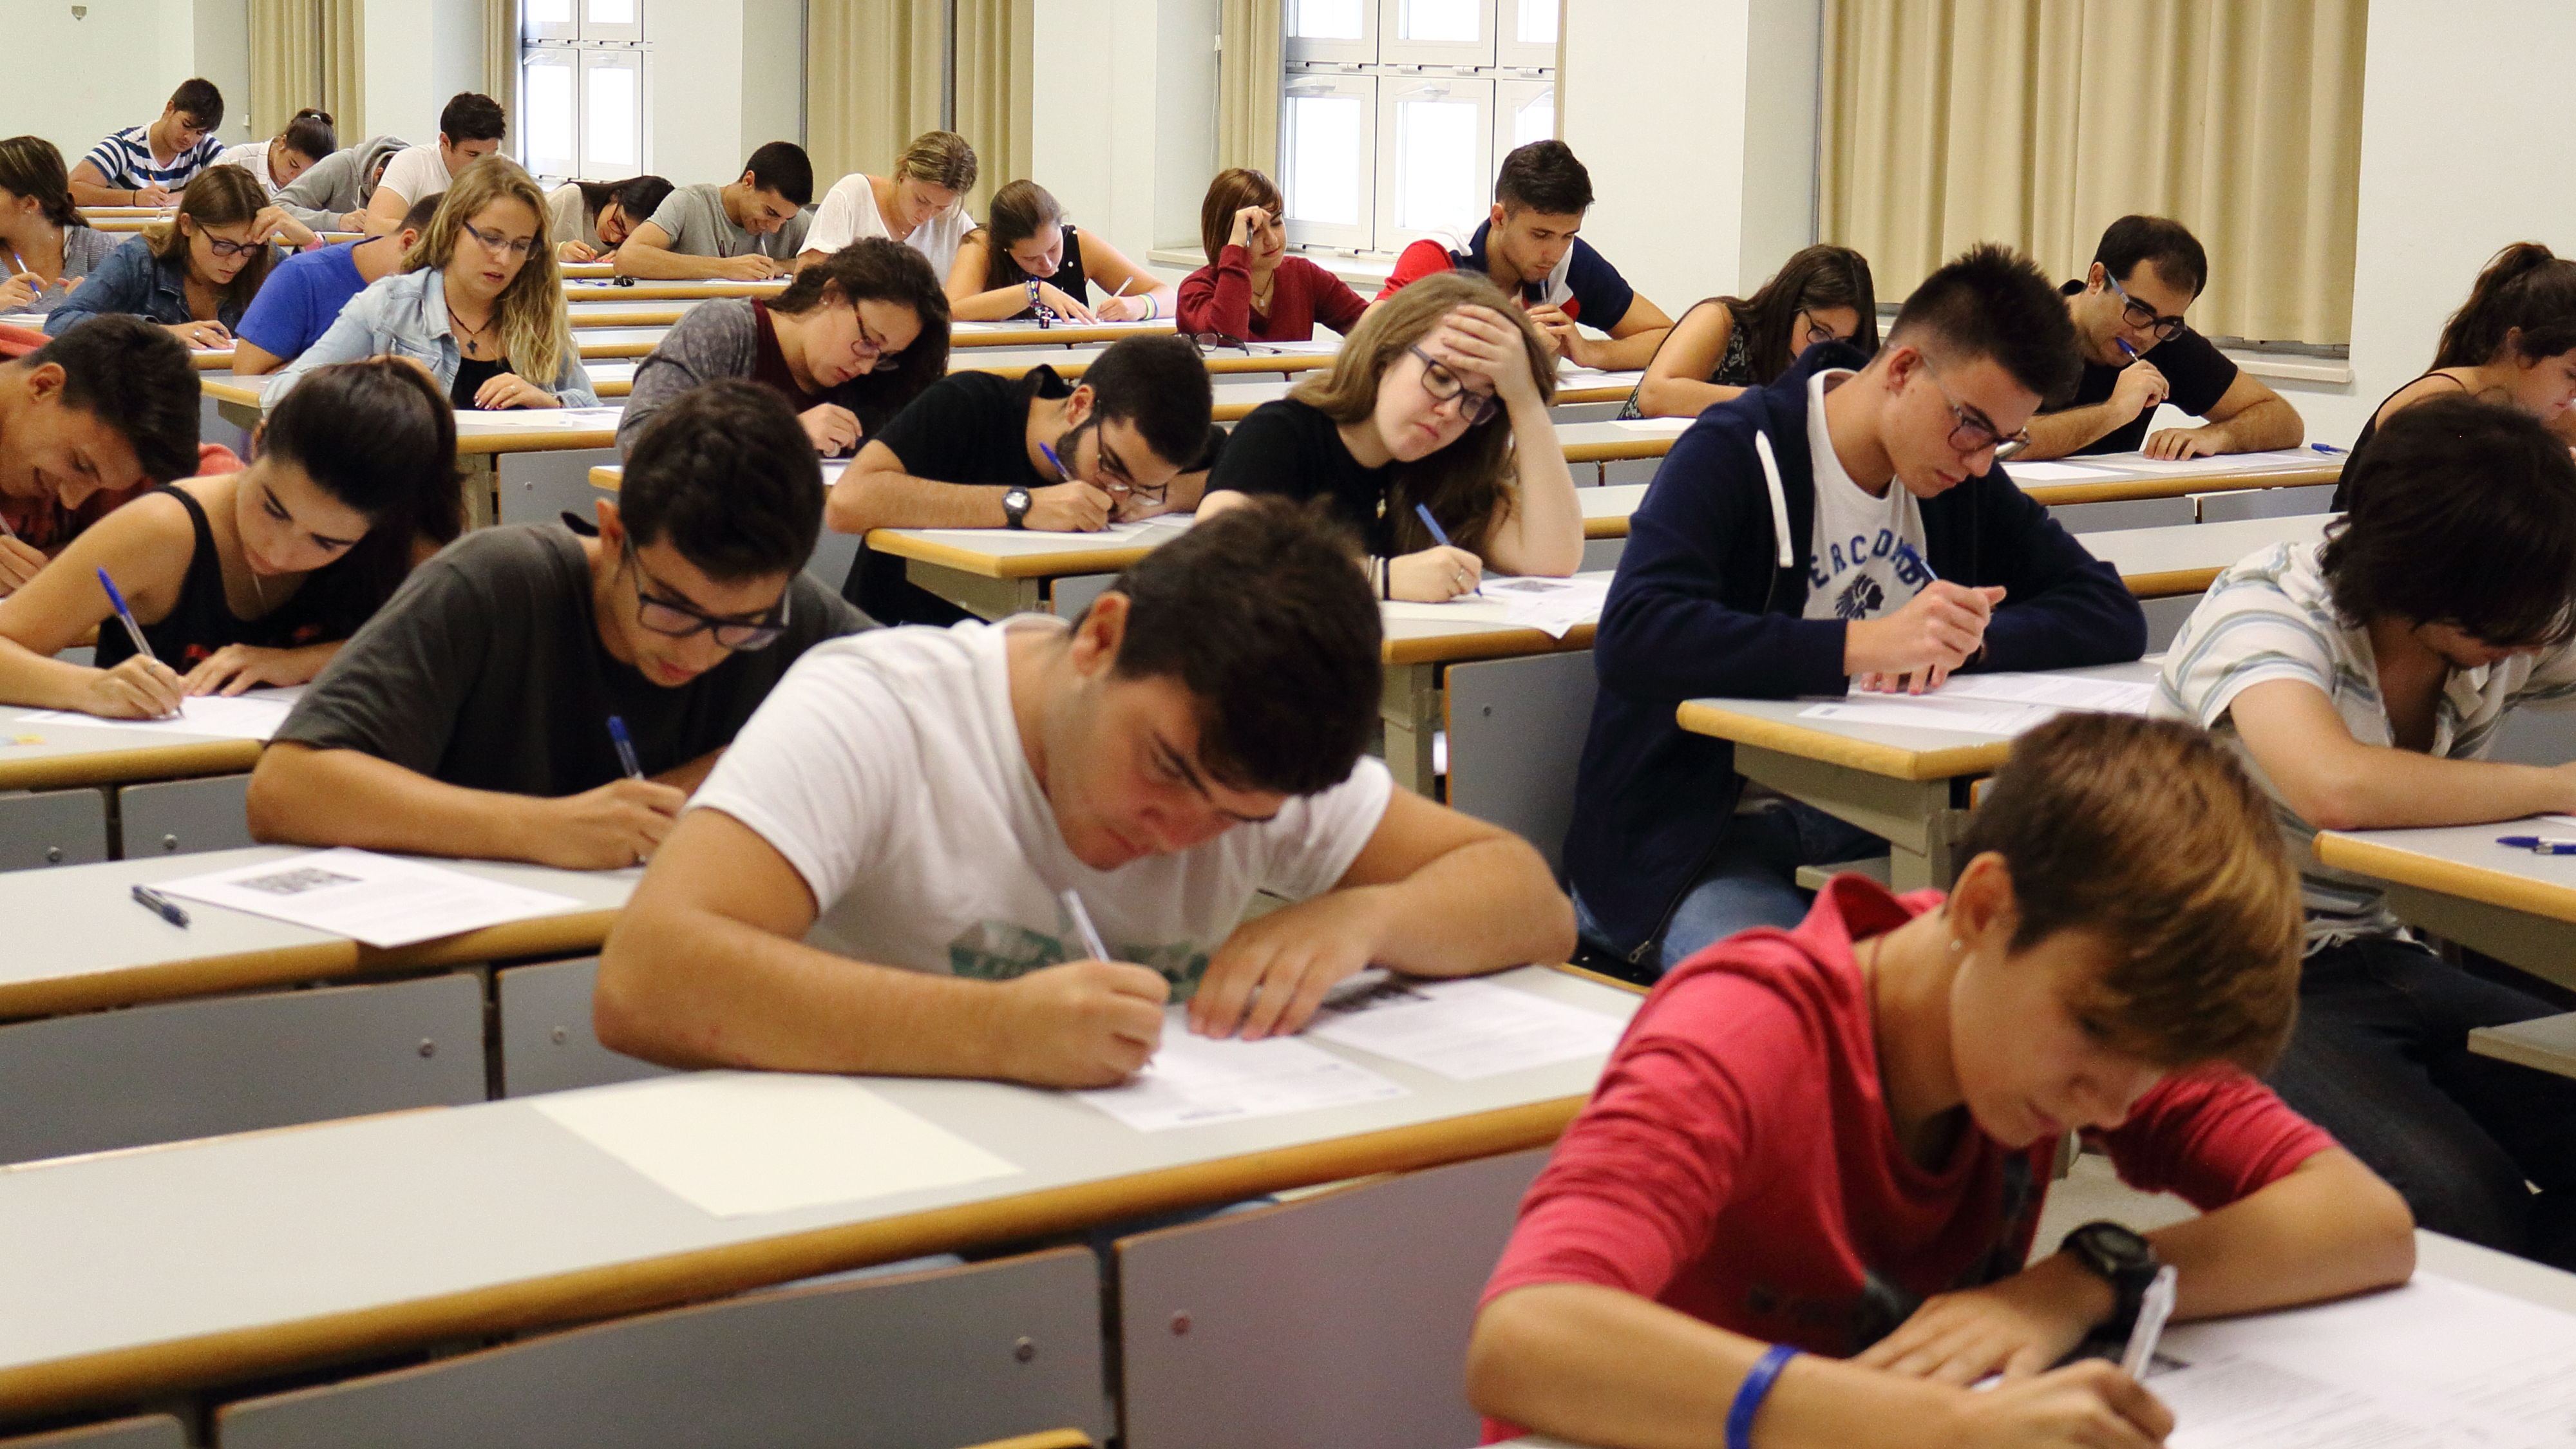 Chuletas en los exámenes: ¿realmente son eficaces para aprobar? - Blog   España